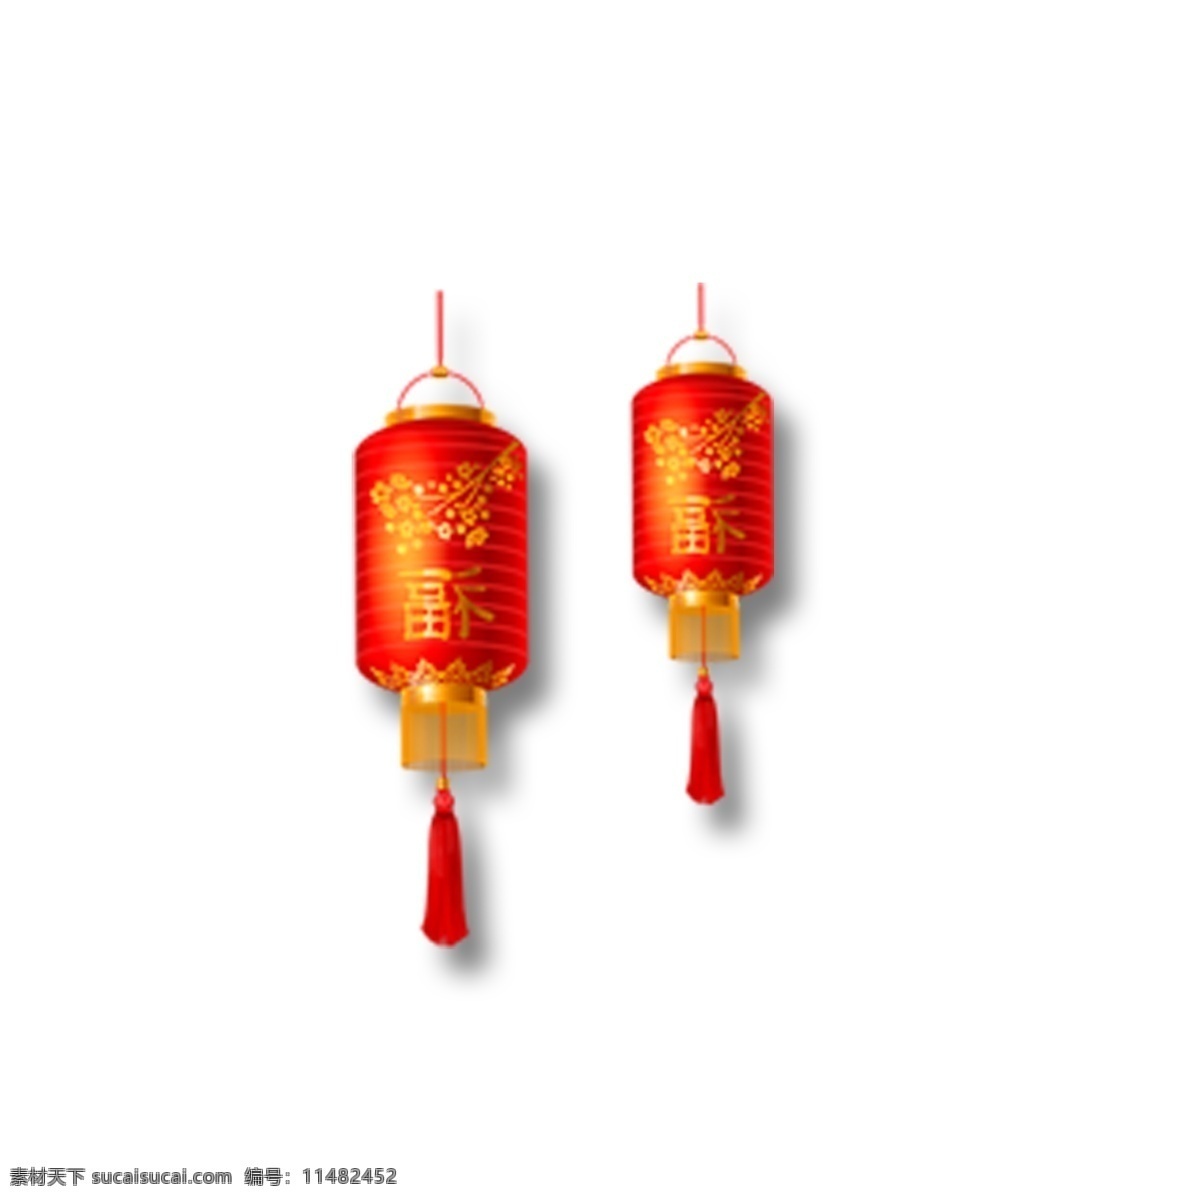 红色 灯笼 免 抠 图 二个灯笼 中国风灯笼 漂亮的灯笼 新年装饰 新年灯笼 红色的灯笼 免抠图